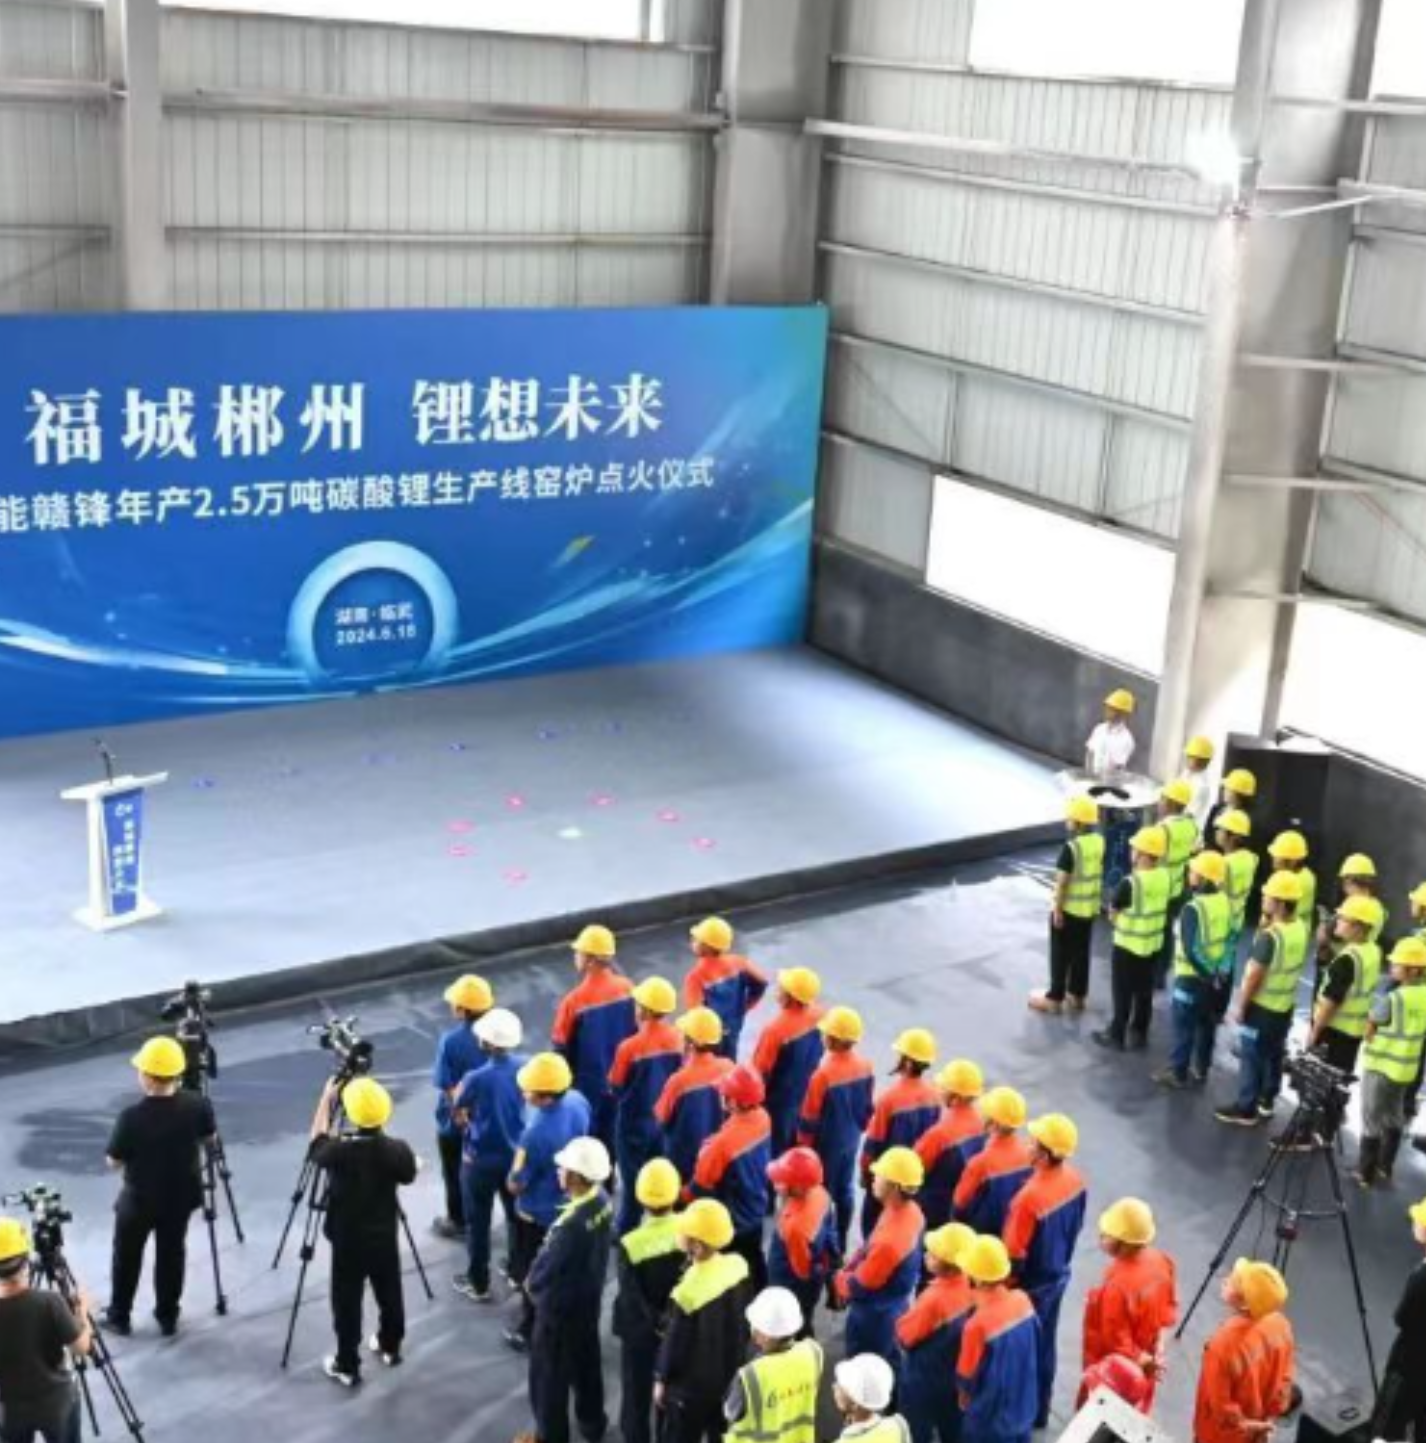 福城郴州 锂想未来 | 安能赣锋年产2.5万吨碳酸锂生产线点火